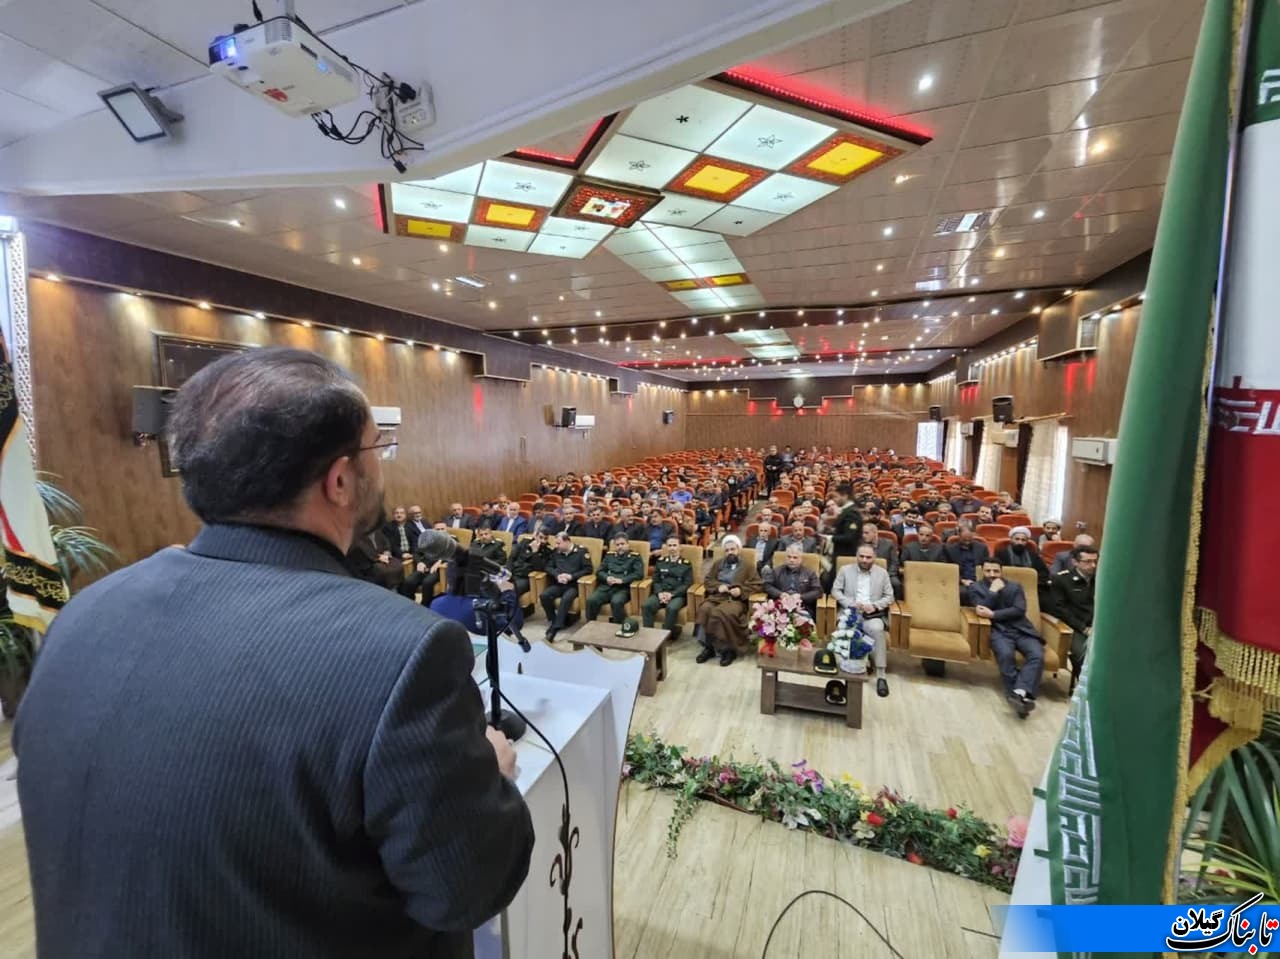 گزارش تصویری از مراسم تکریم ومعارفه فرمانده انتظامی جدید شهرستان لنگرود